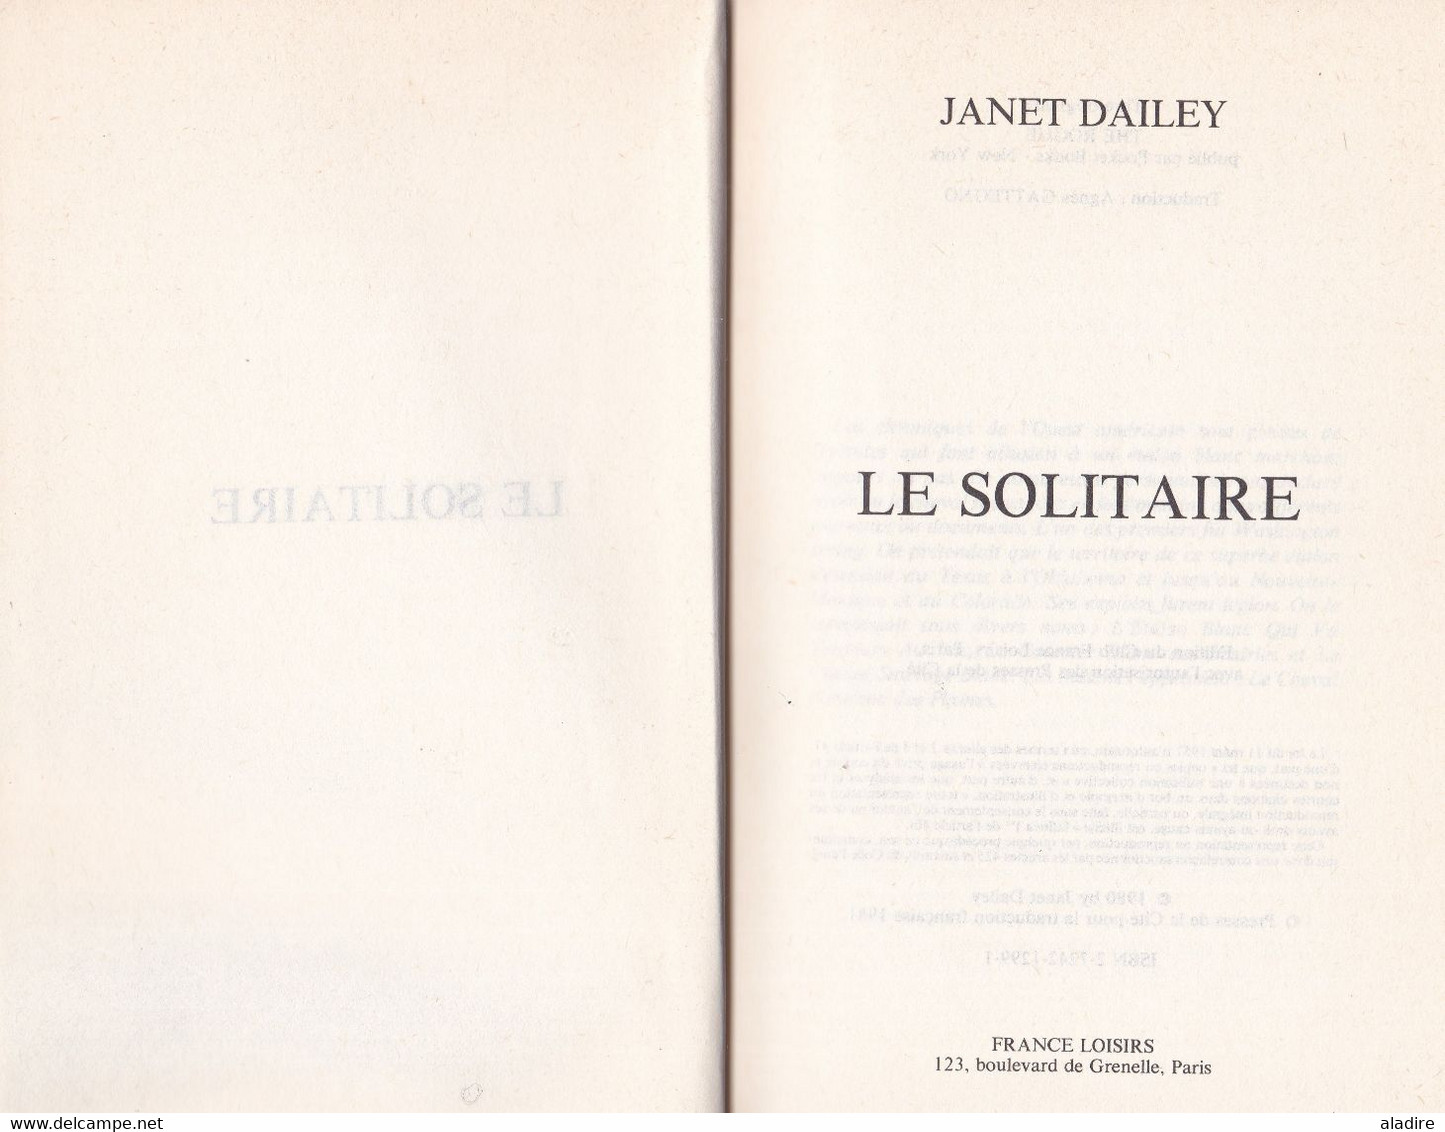 Janet Dailey -  Le Solitaire,  Roman, 1980 - Relié - 319 Pages - € 1.00 - Adventure